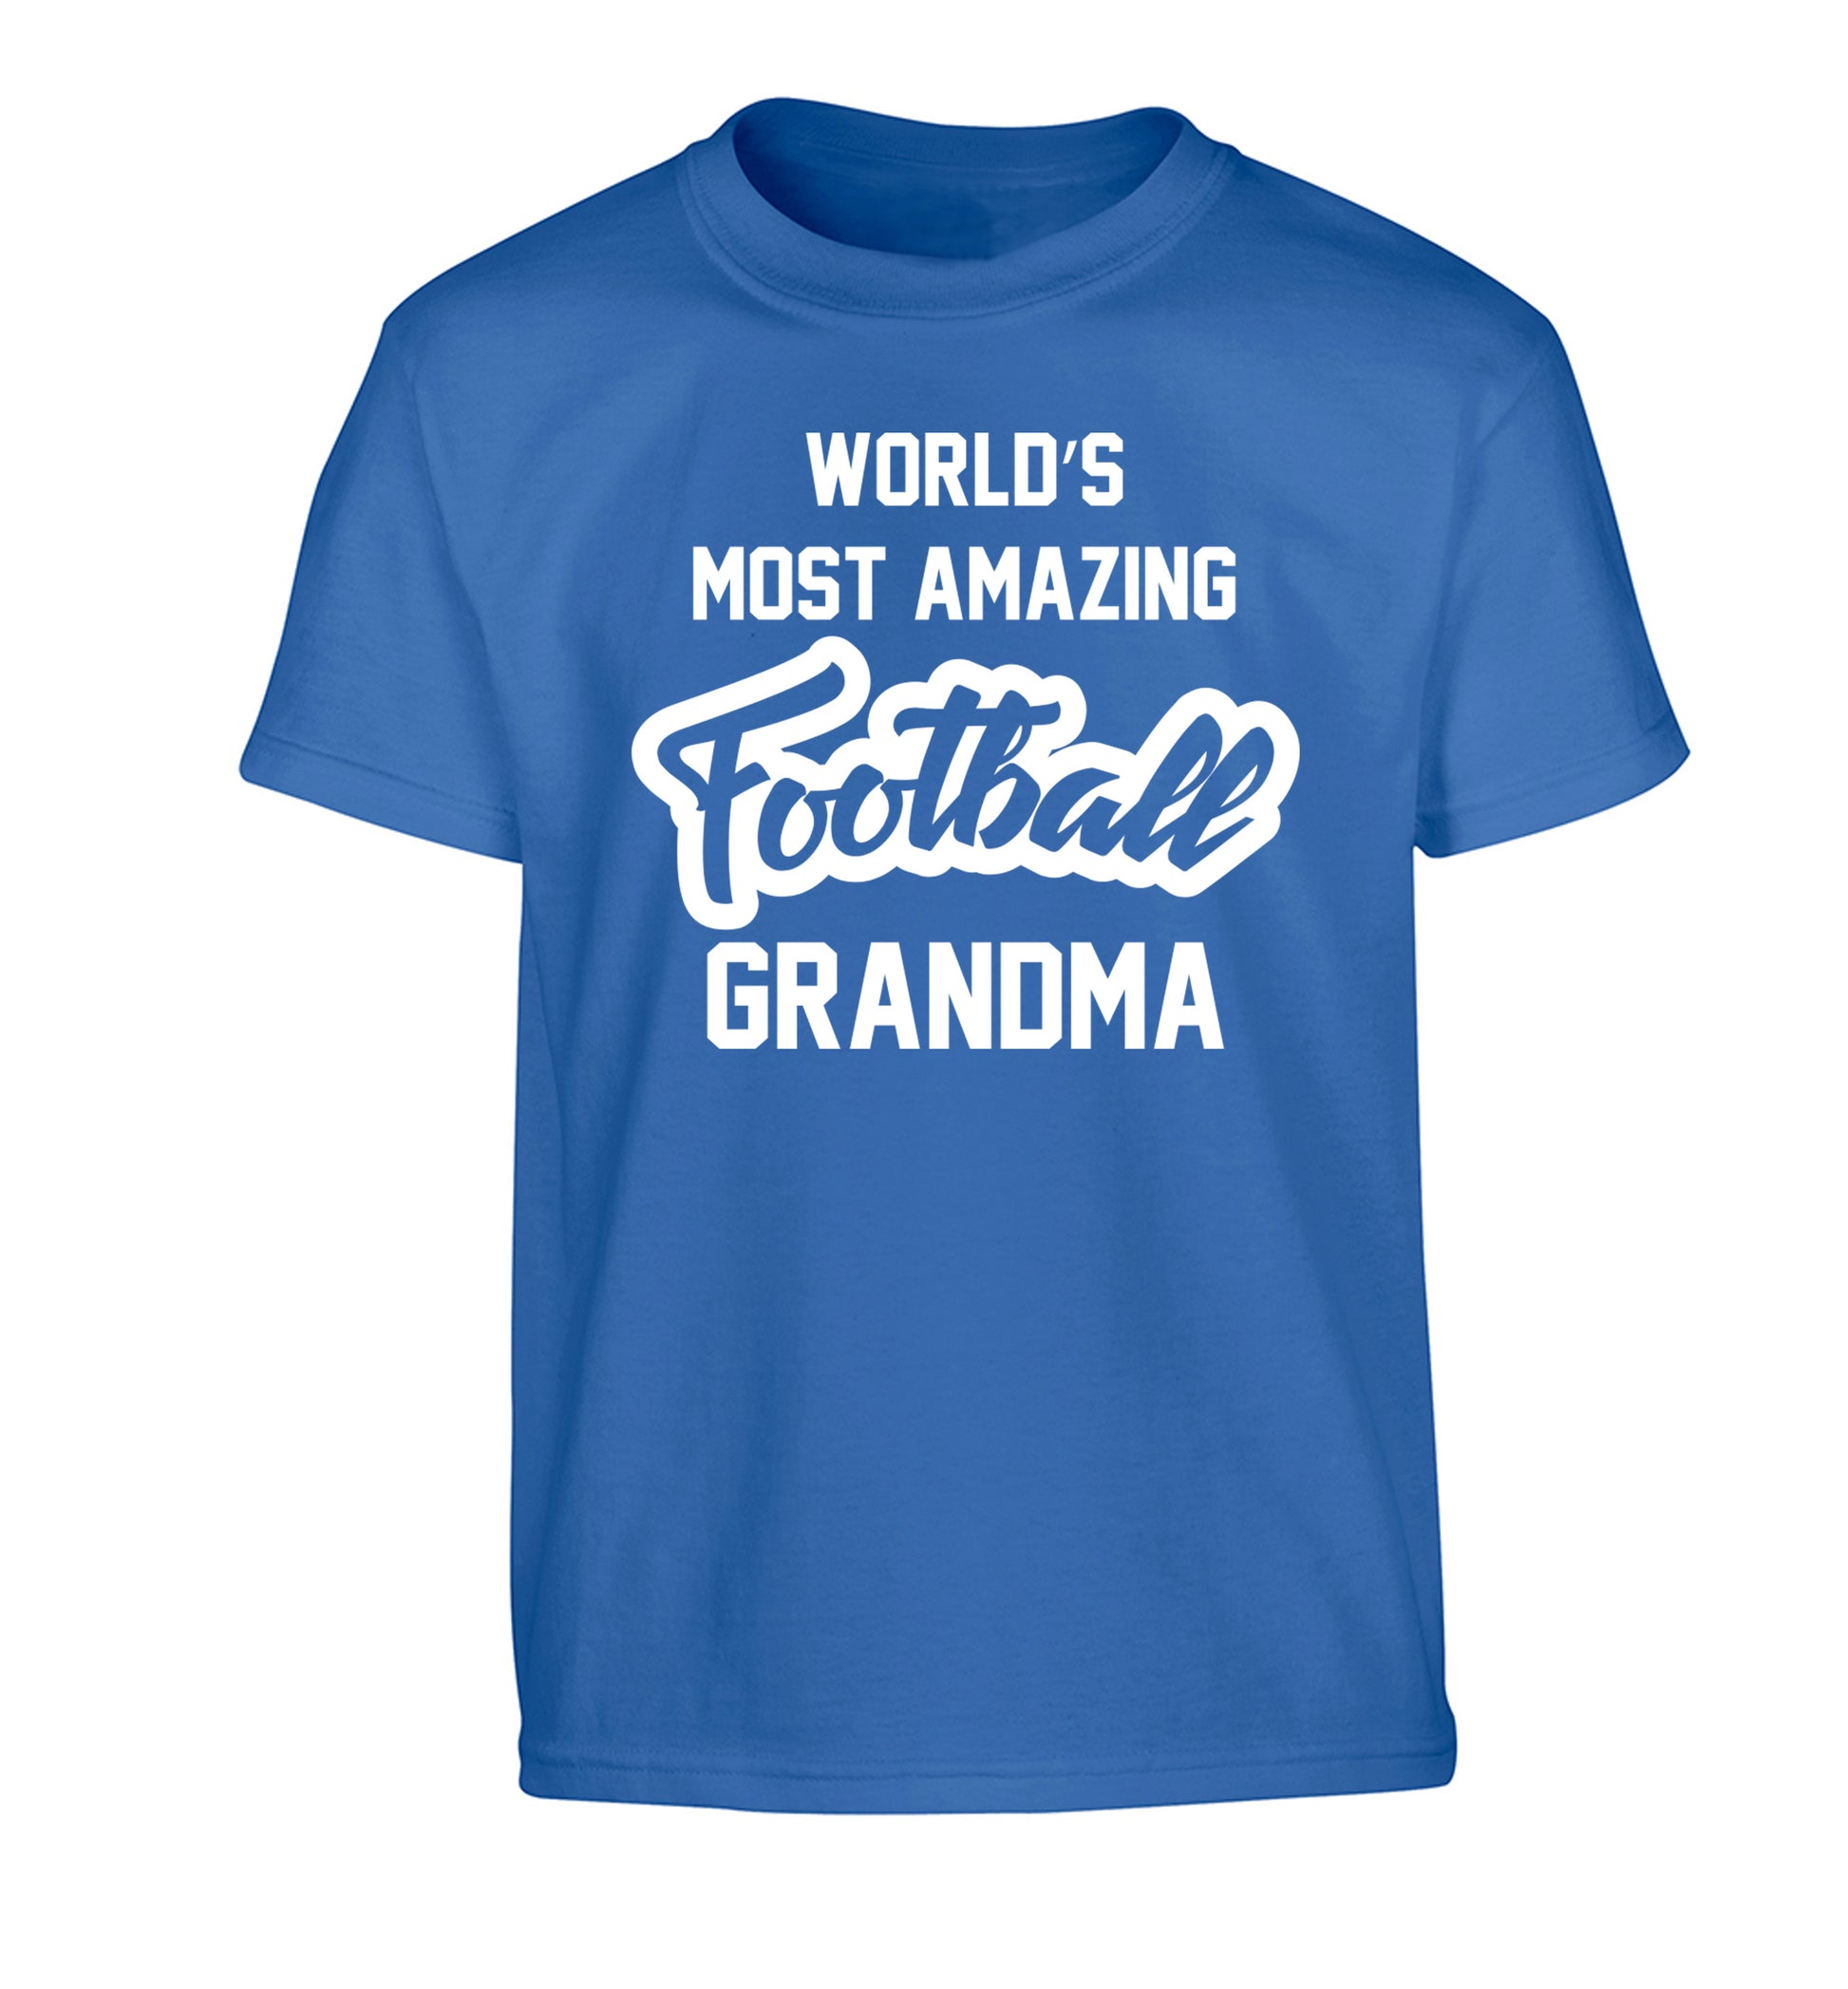 Worlds most amazing football grandma Children's blue Tshirt 12-14 Years